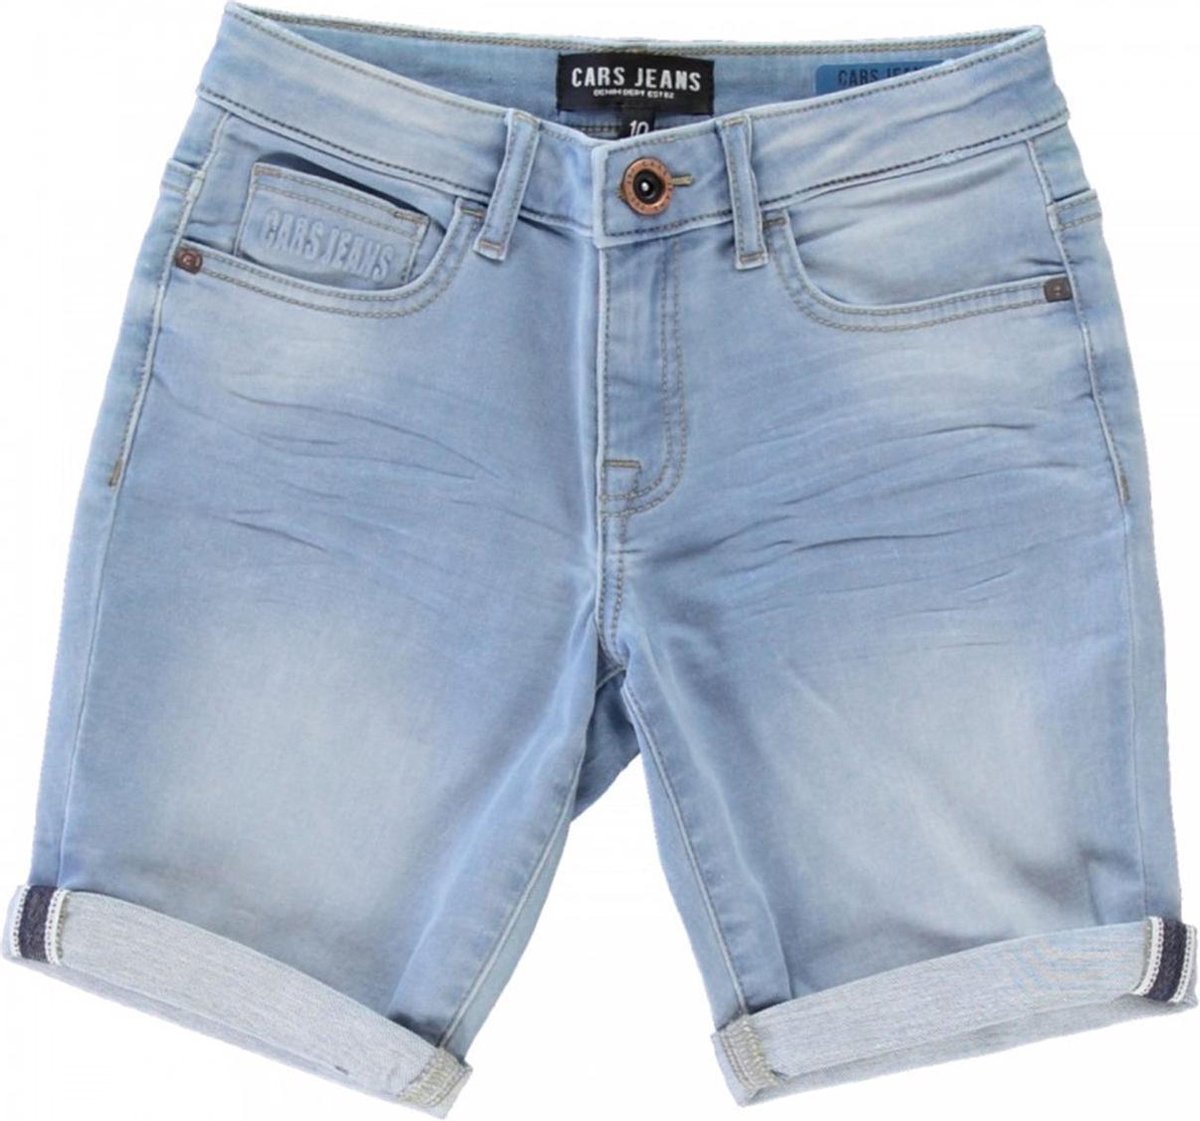 Cars jeans bermuda jongens - bleached used - Seatle - maat 152